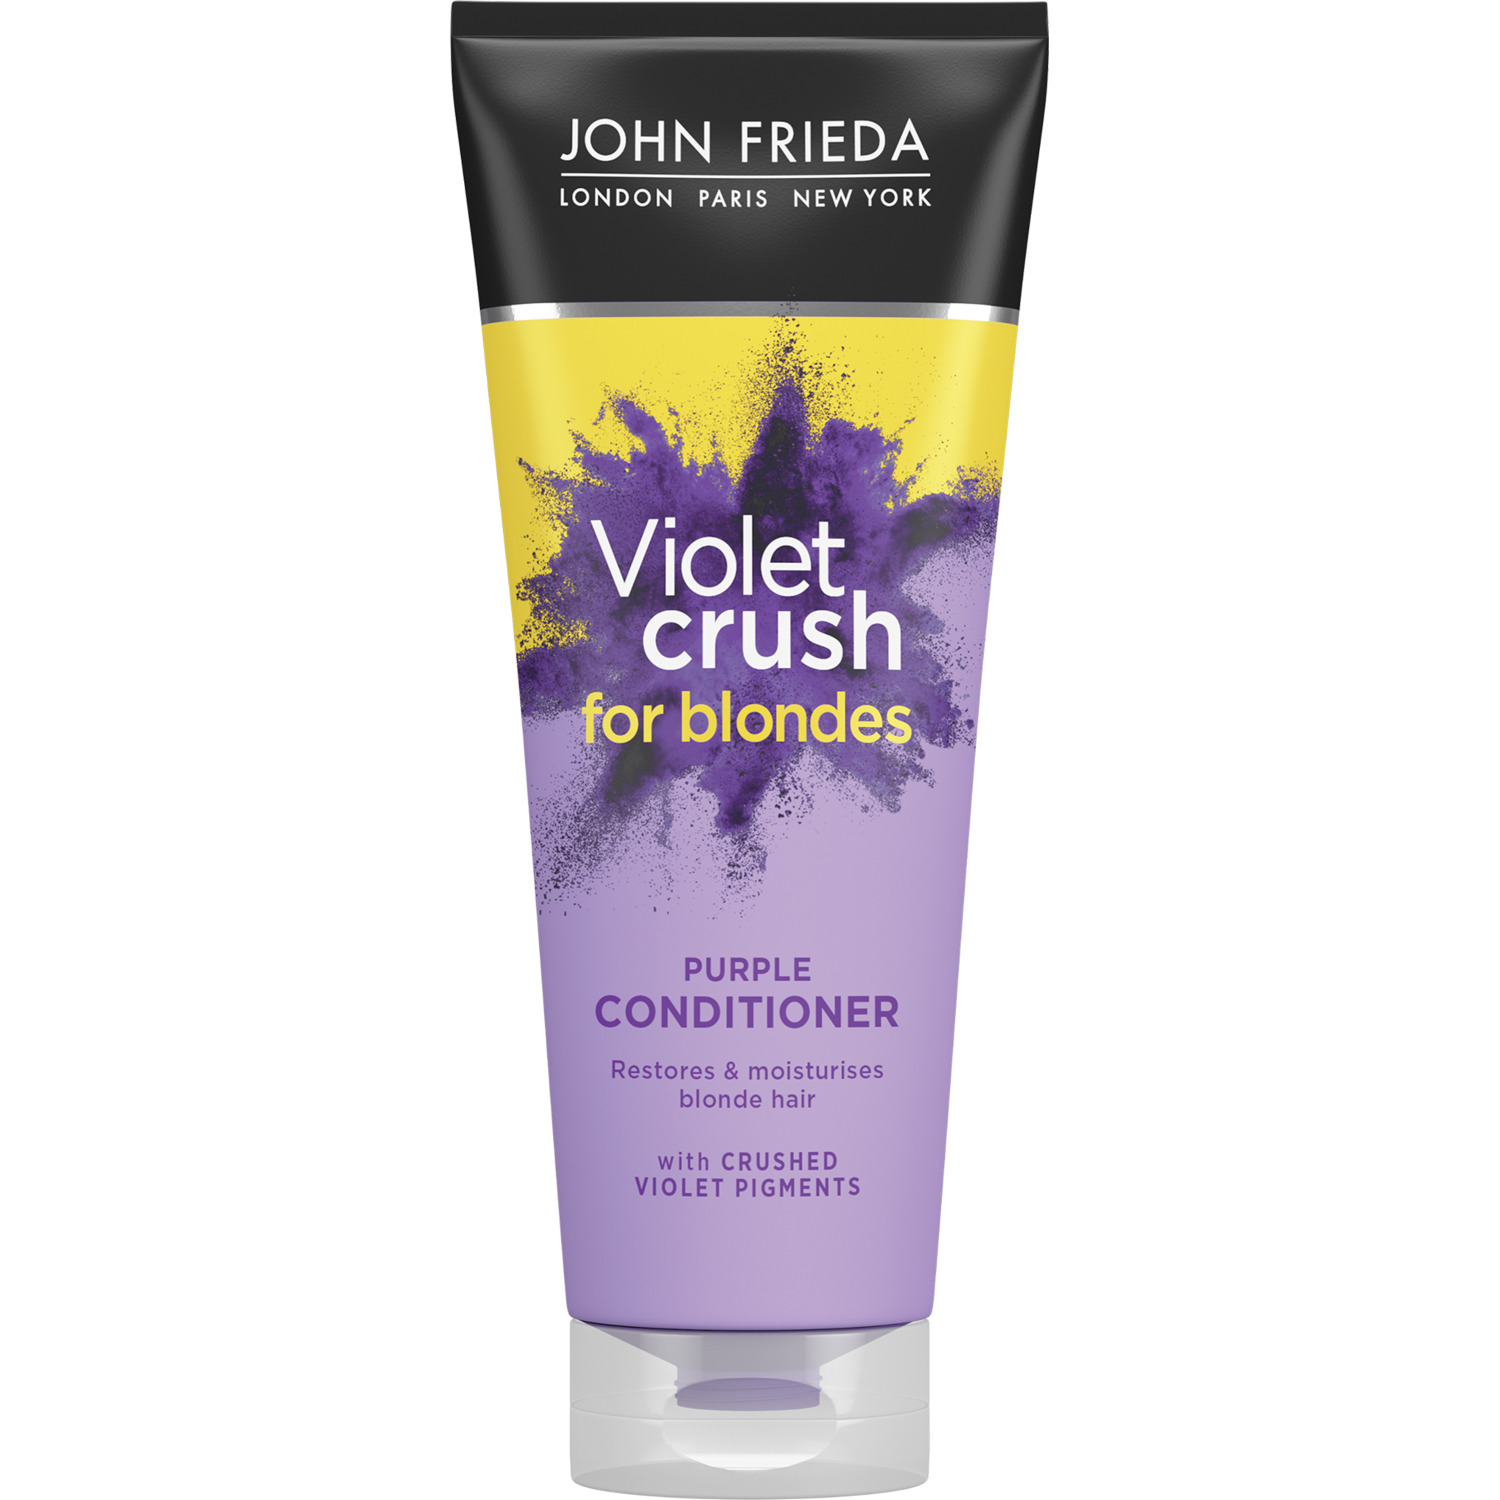 Кондиционер для восстановления и поддержания оттенка светлых волос John Frieda Violet Crush с фиолетовым пигментом 250 мл спрей кондиционер д волос натуральное ламинирование несмываемый 95мл